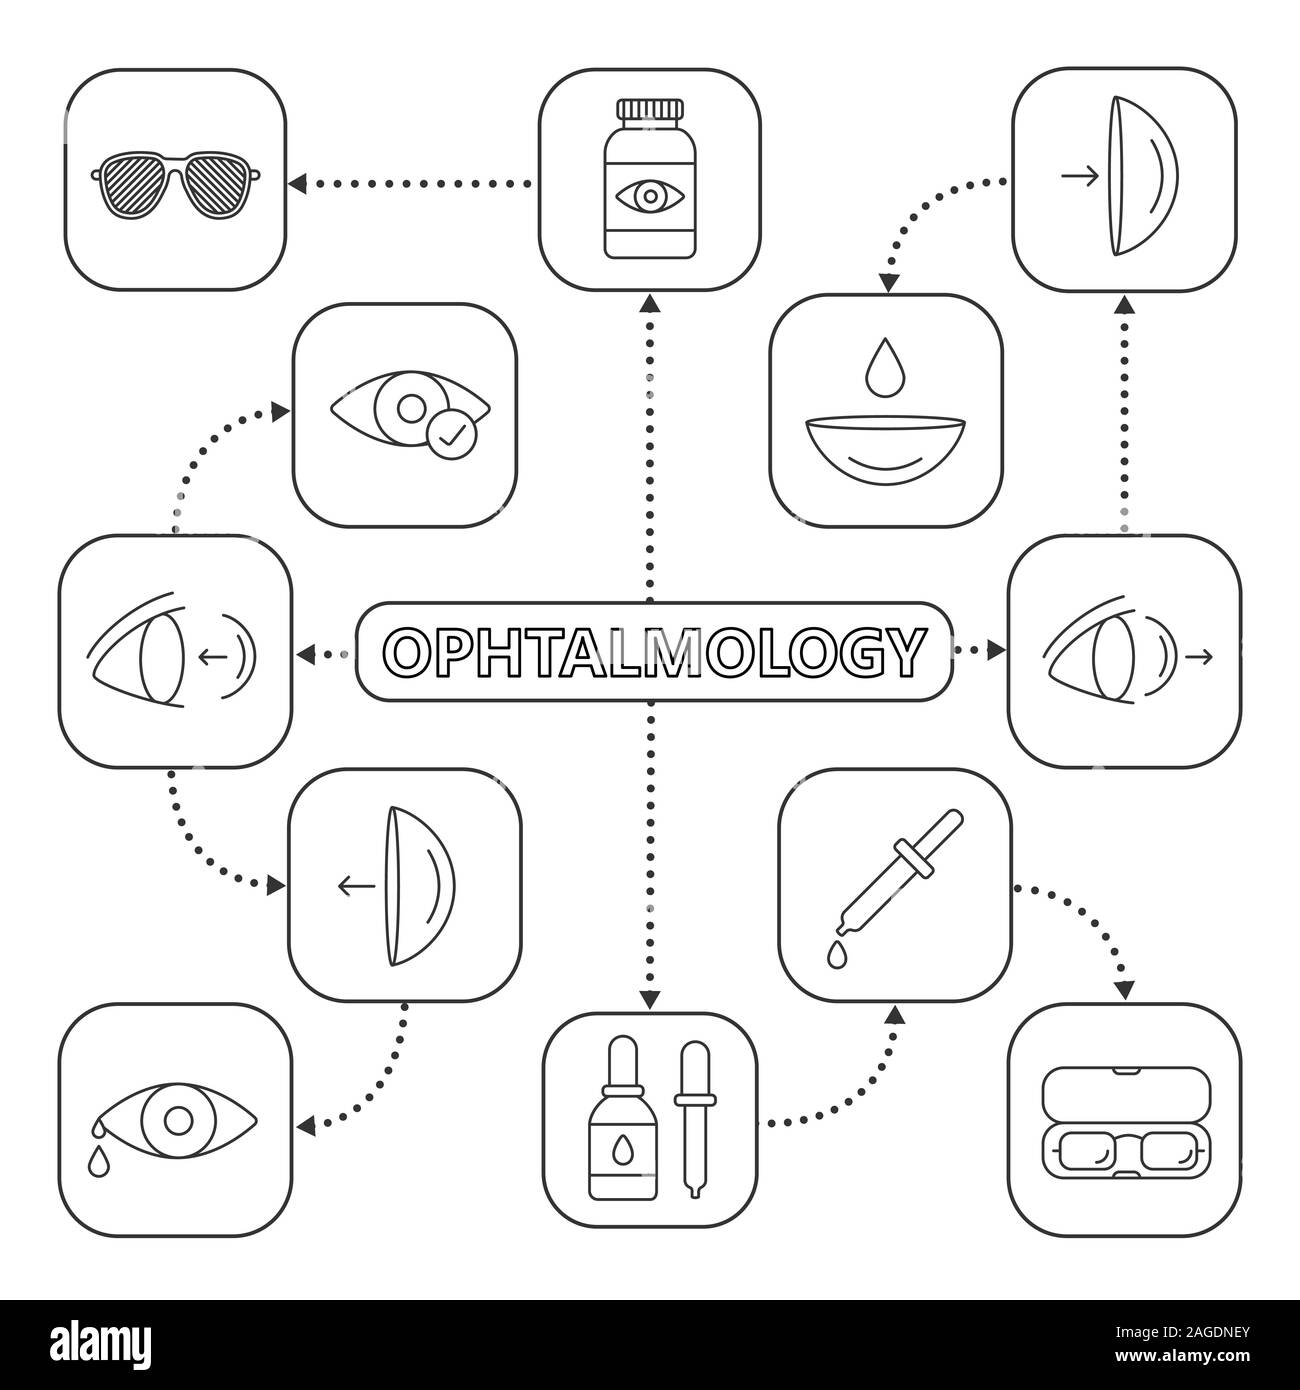 Oftalmología mapa mental lineal con iconos. Concepto de optometría plan.  Píldoras de ojo, gotero con drop, pinhole gafas, lentes, lentes de  contacto. Isol Imagen Vector de stock - Alamy